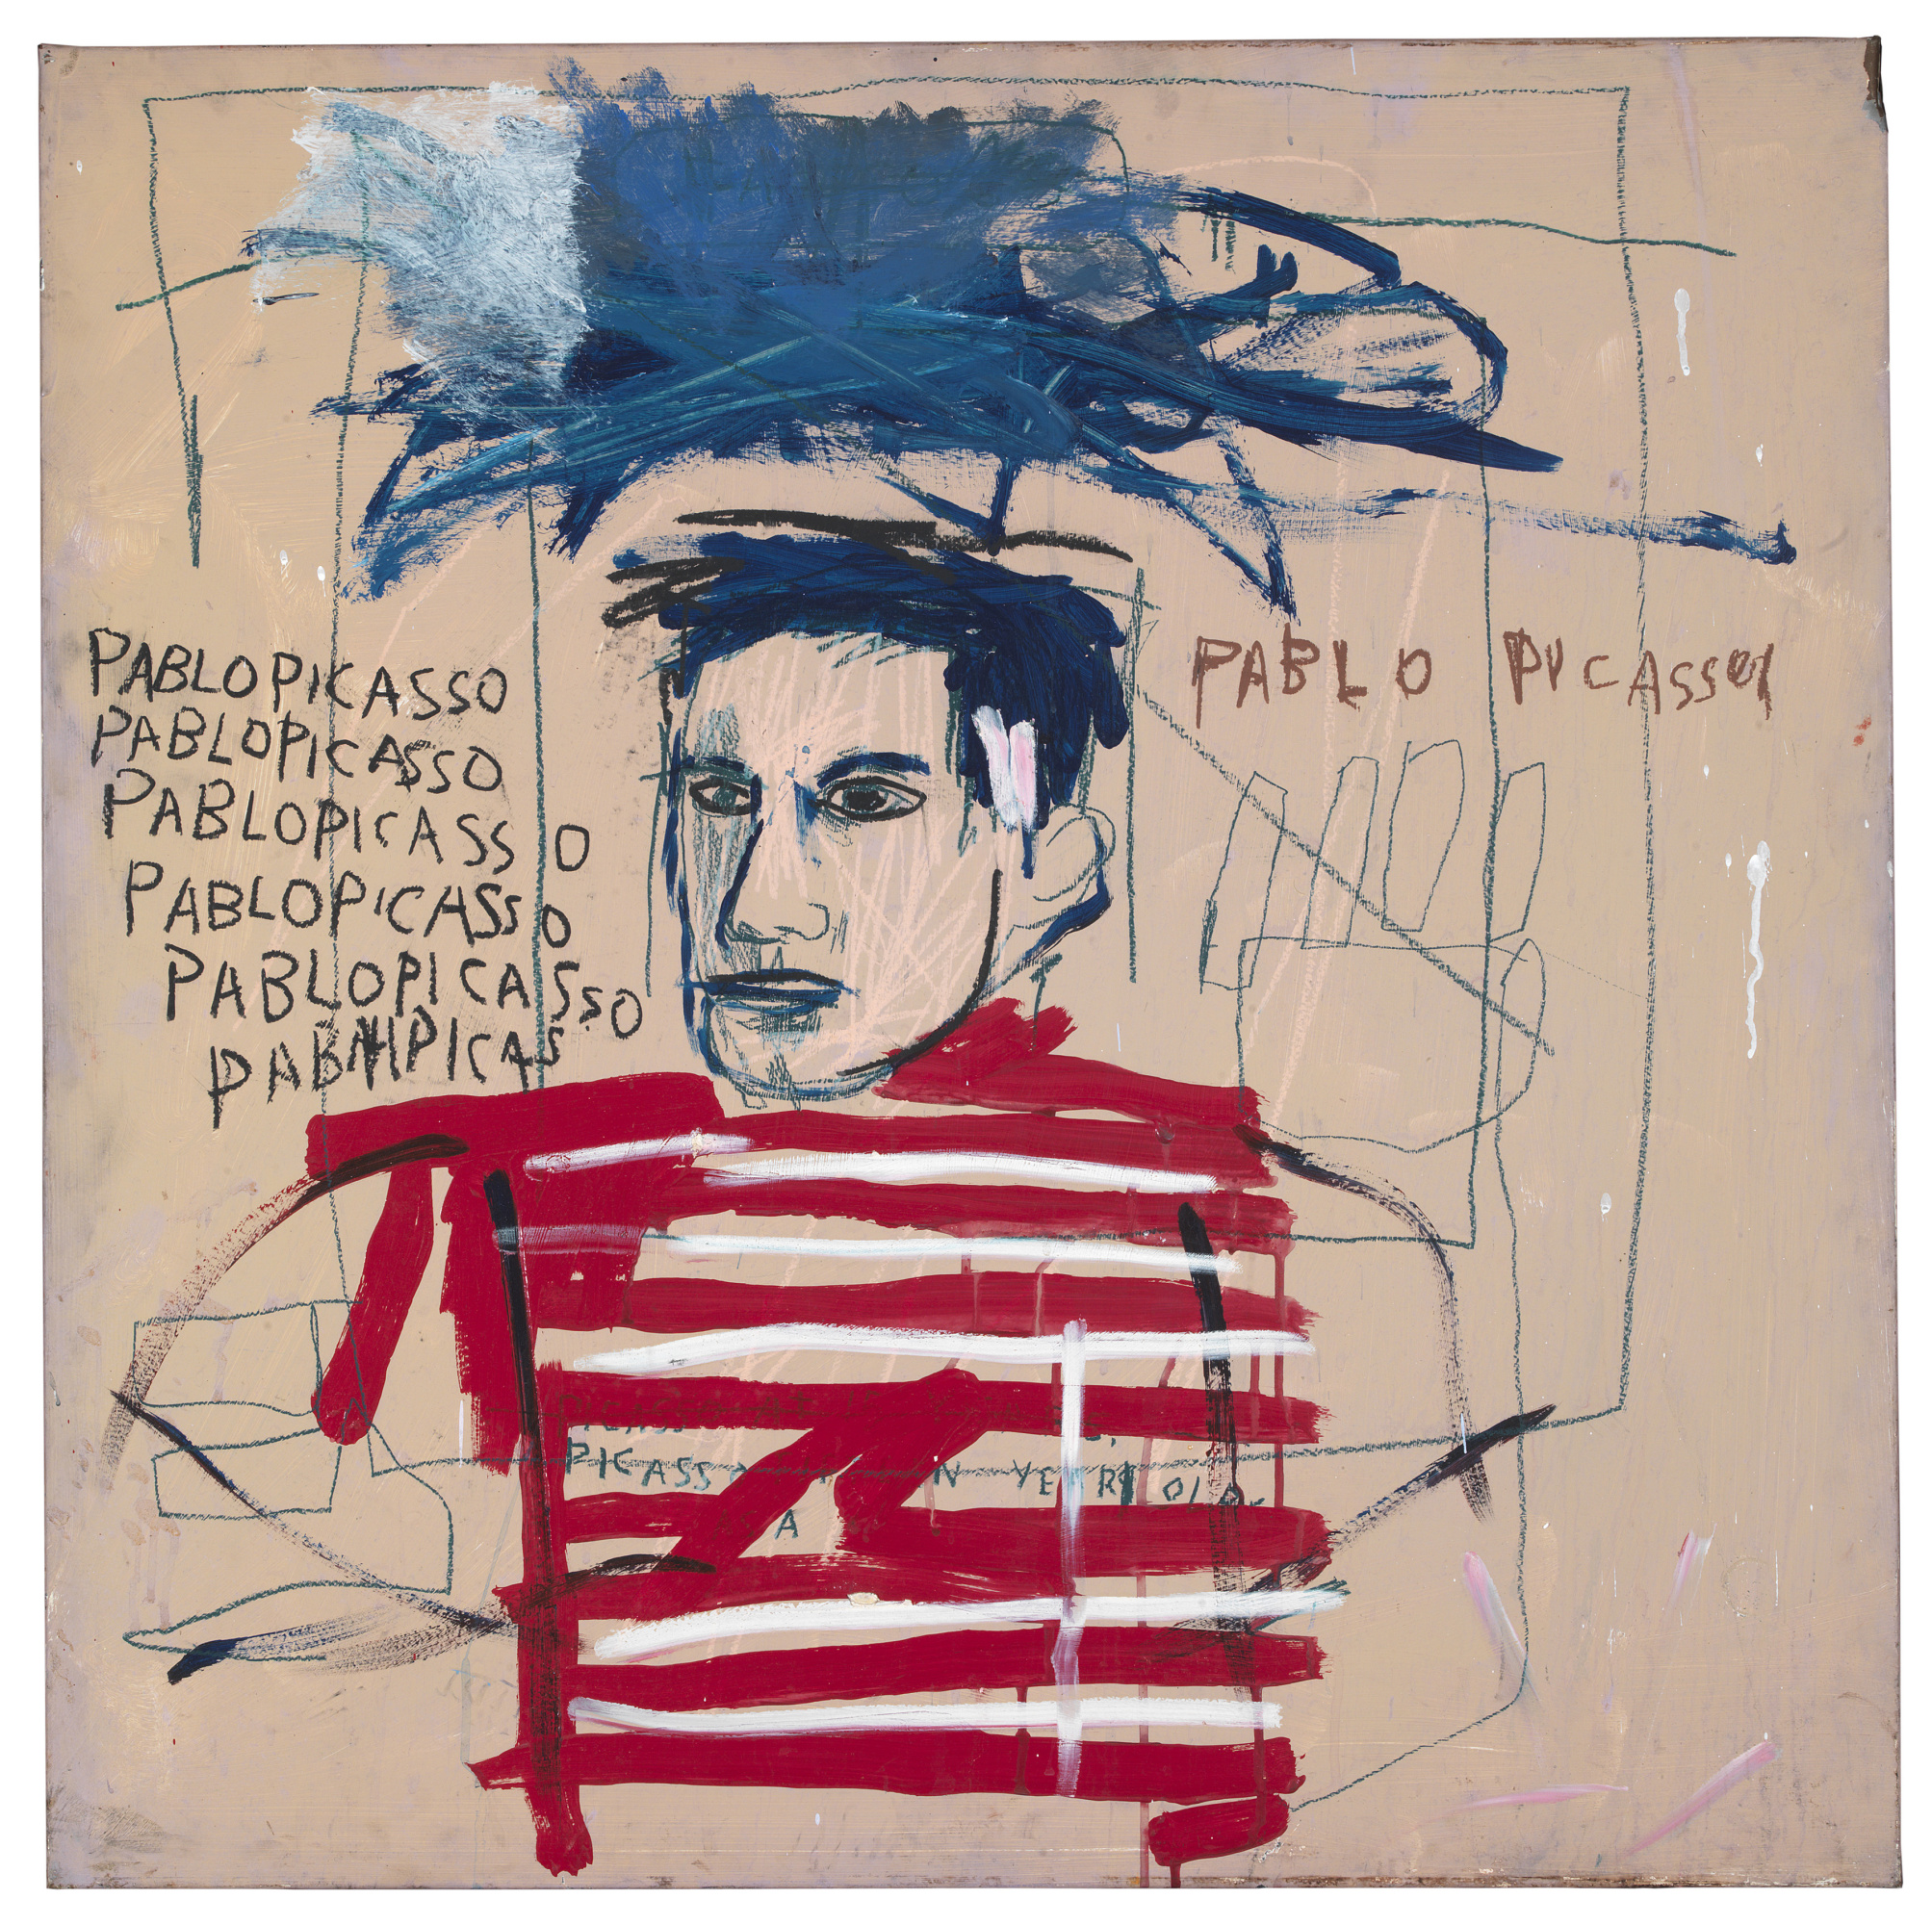 Pablo Picasso (Пабло Пикассо), 1984. Жан-Мишель Баския (Jean-Michel Basquiat) - американский художник. Неоэкспрессионизм